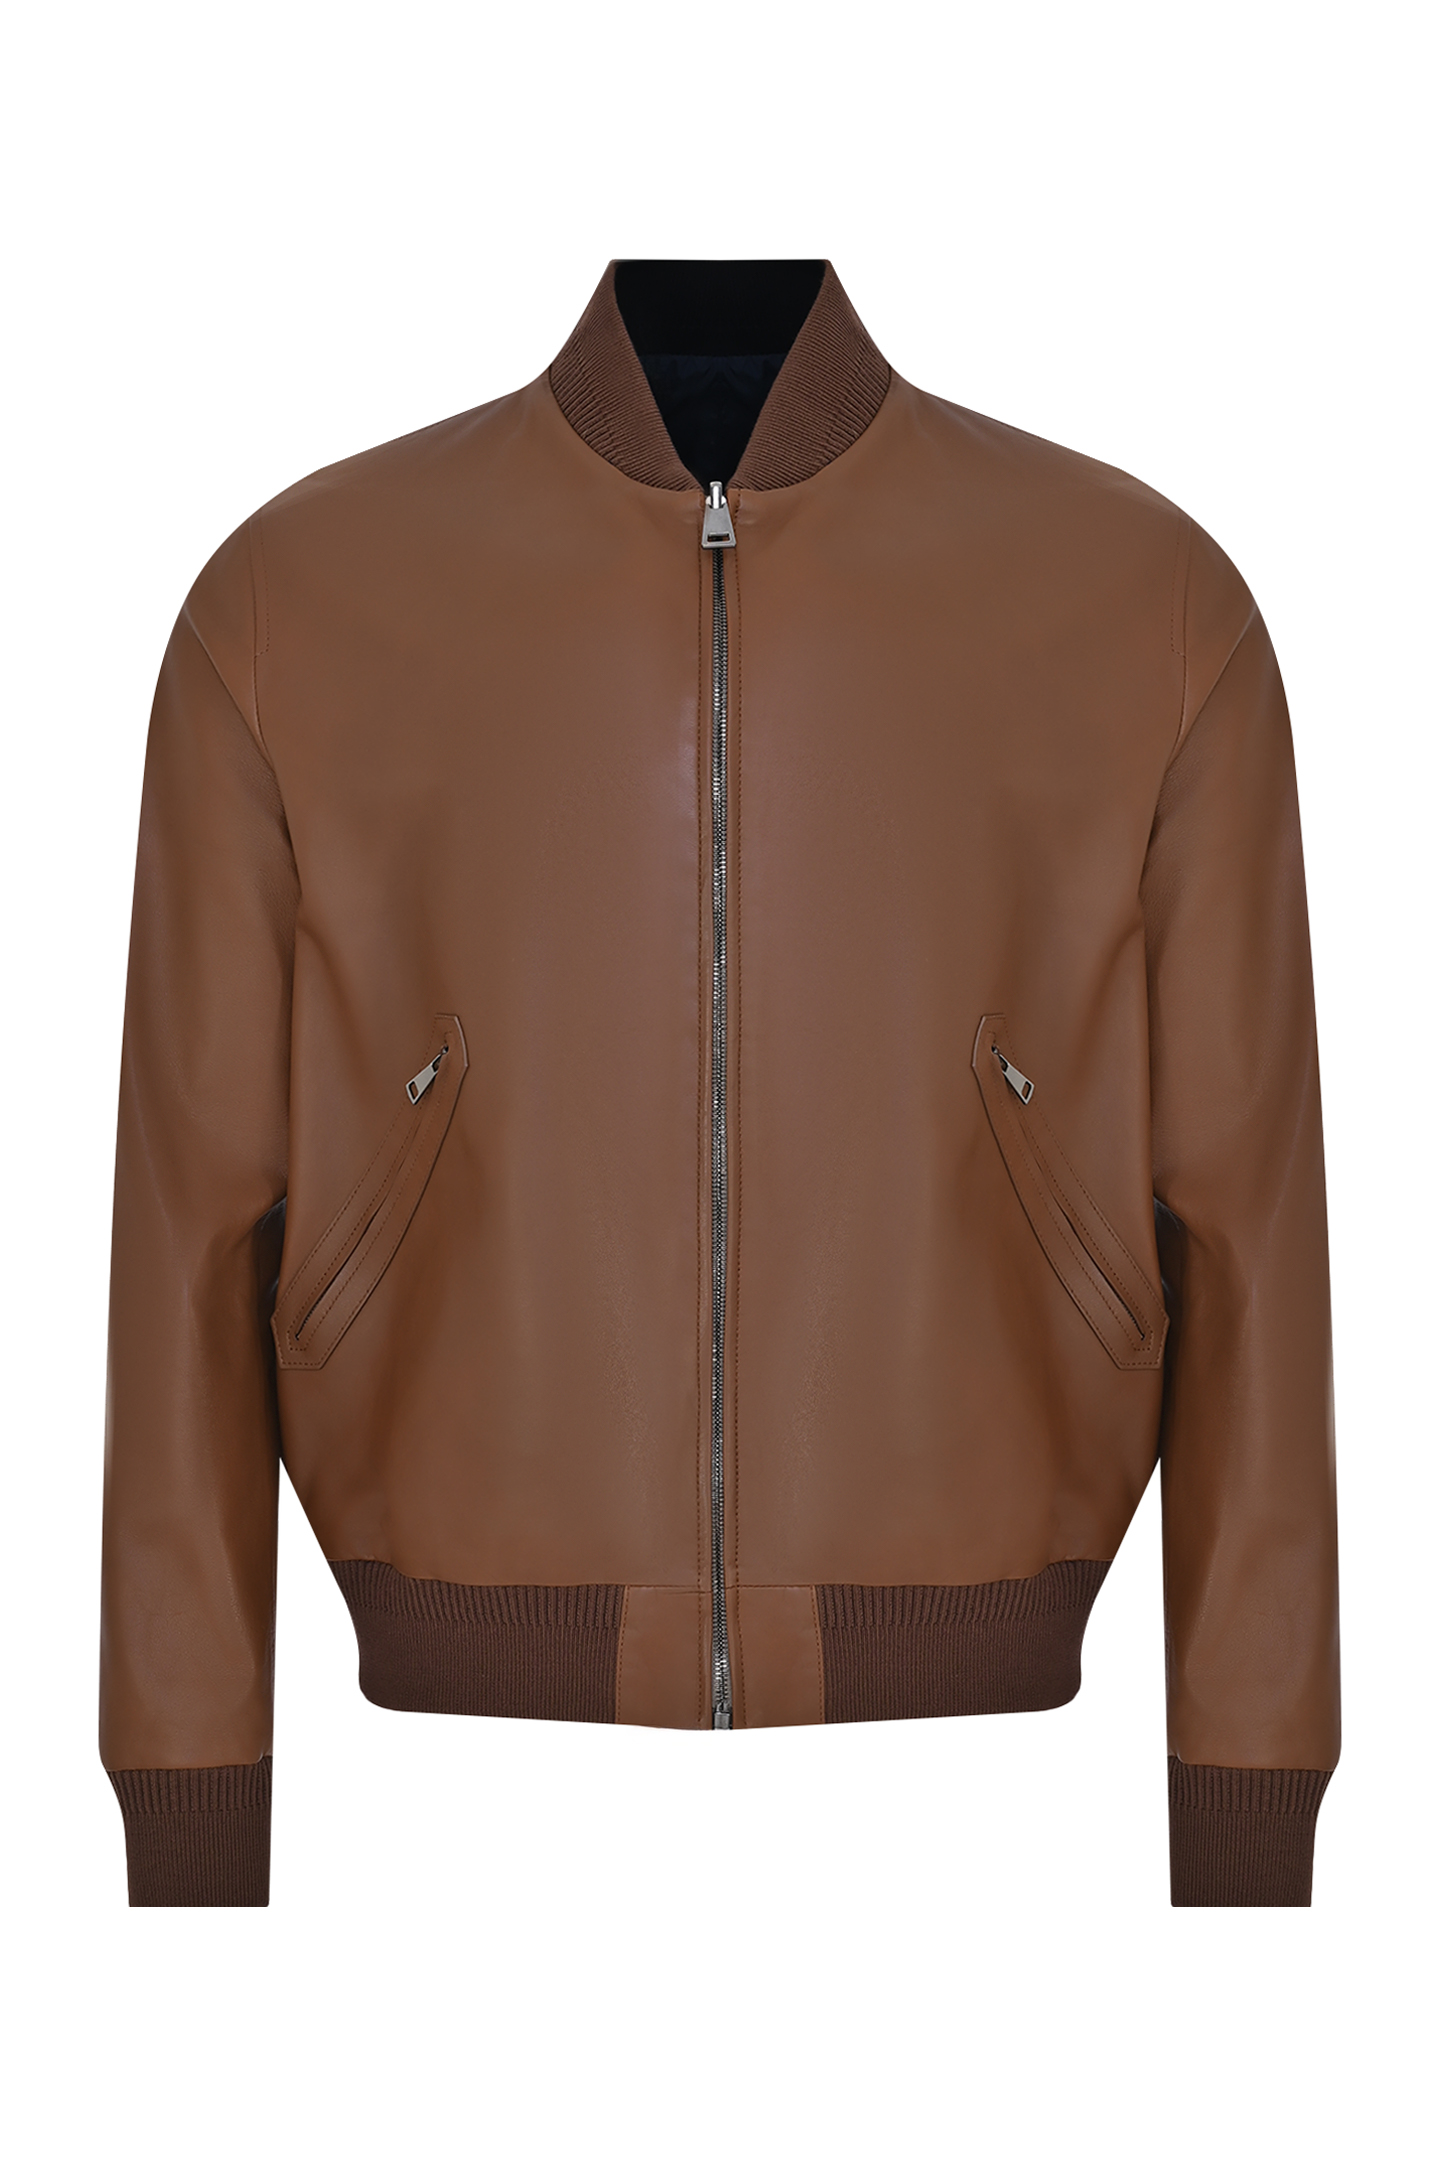 Кожаная куртка двухсторонняя CANALI LE00258 O70409, цвет: Коричневый, Мужской